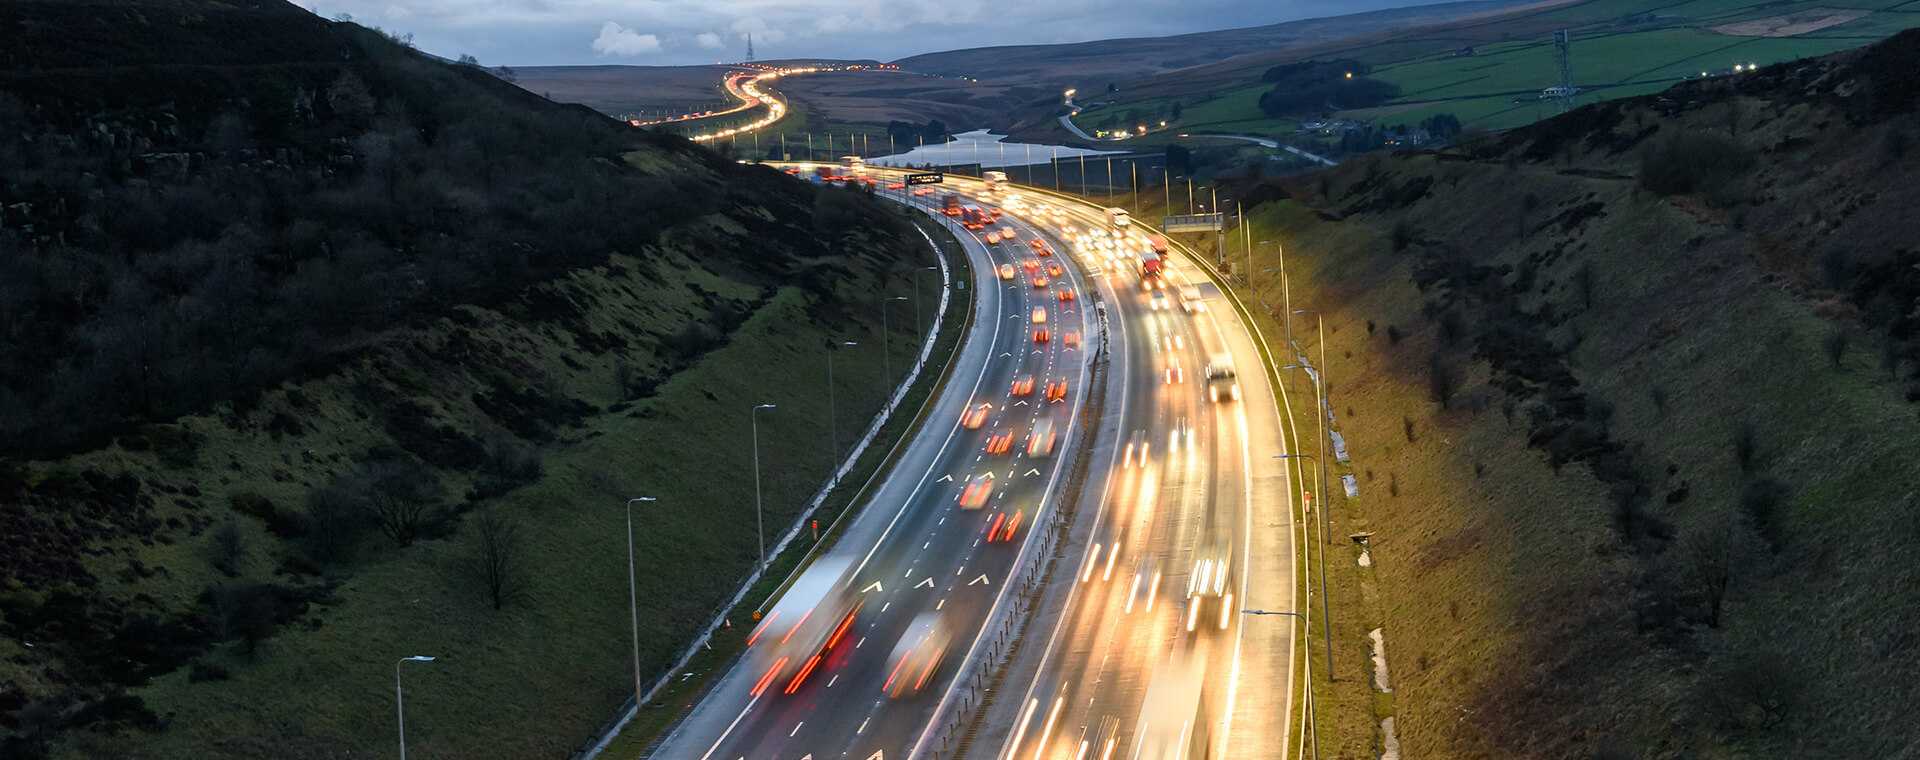 Blurry traffic on a motorway